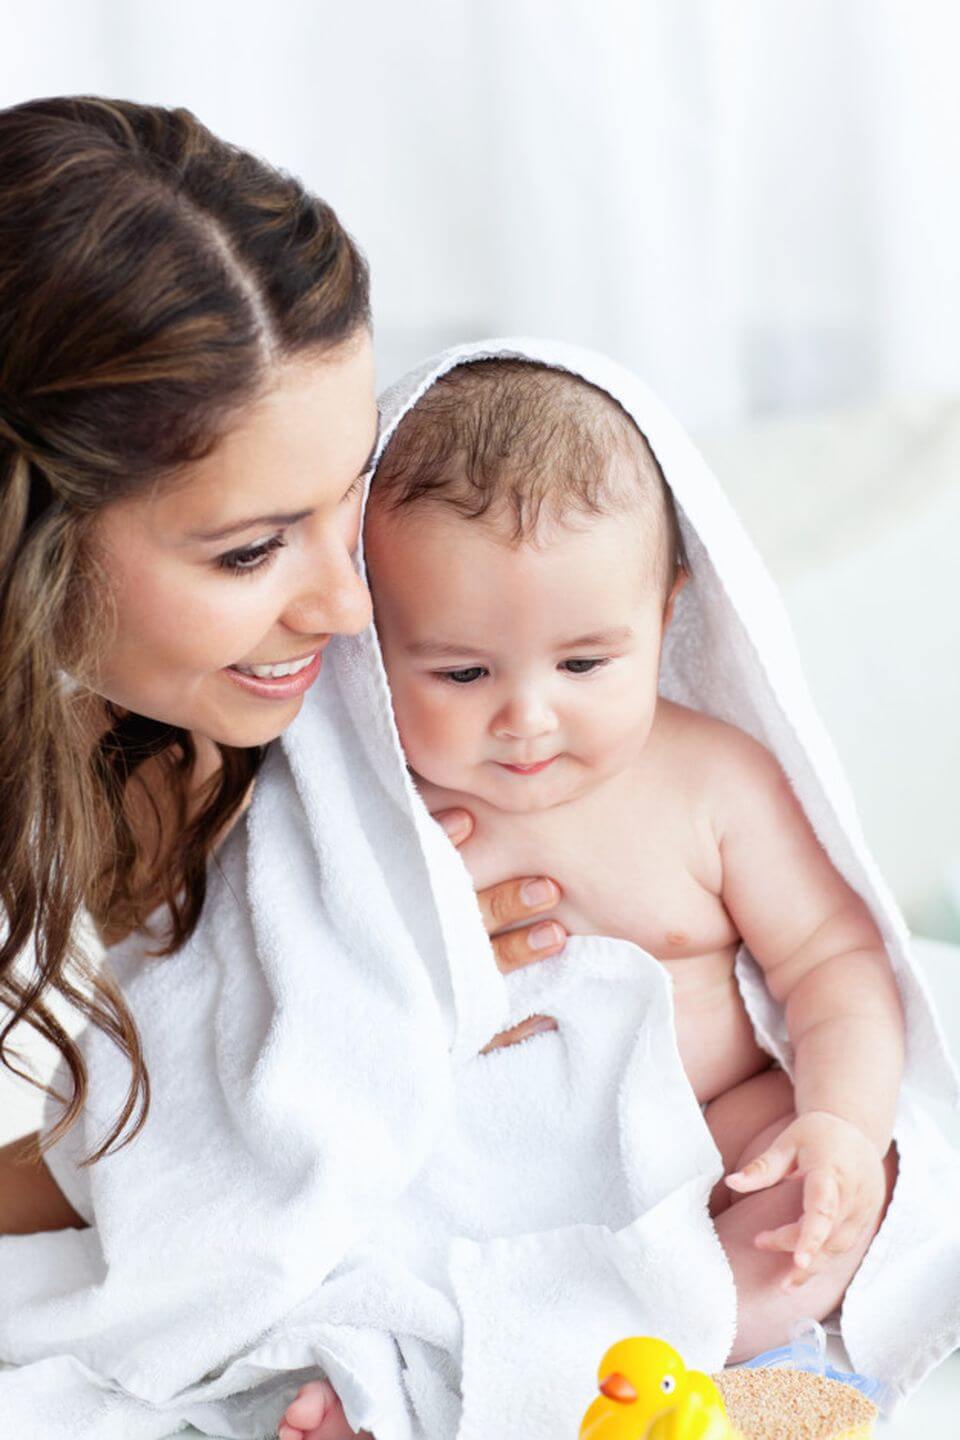 Как мыть новорожденного ребенка: советы и рекомендации